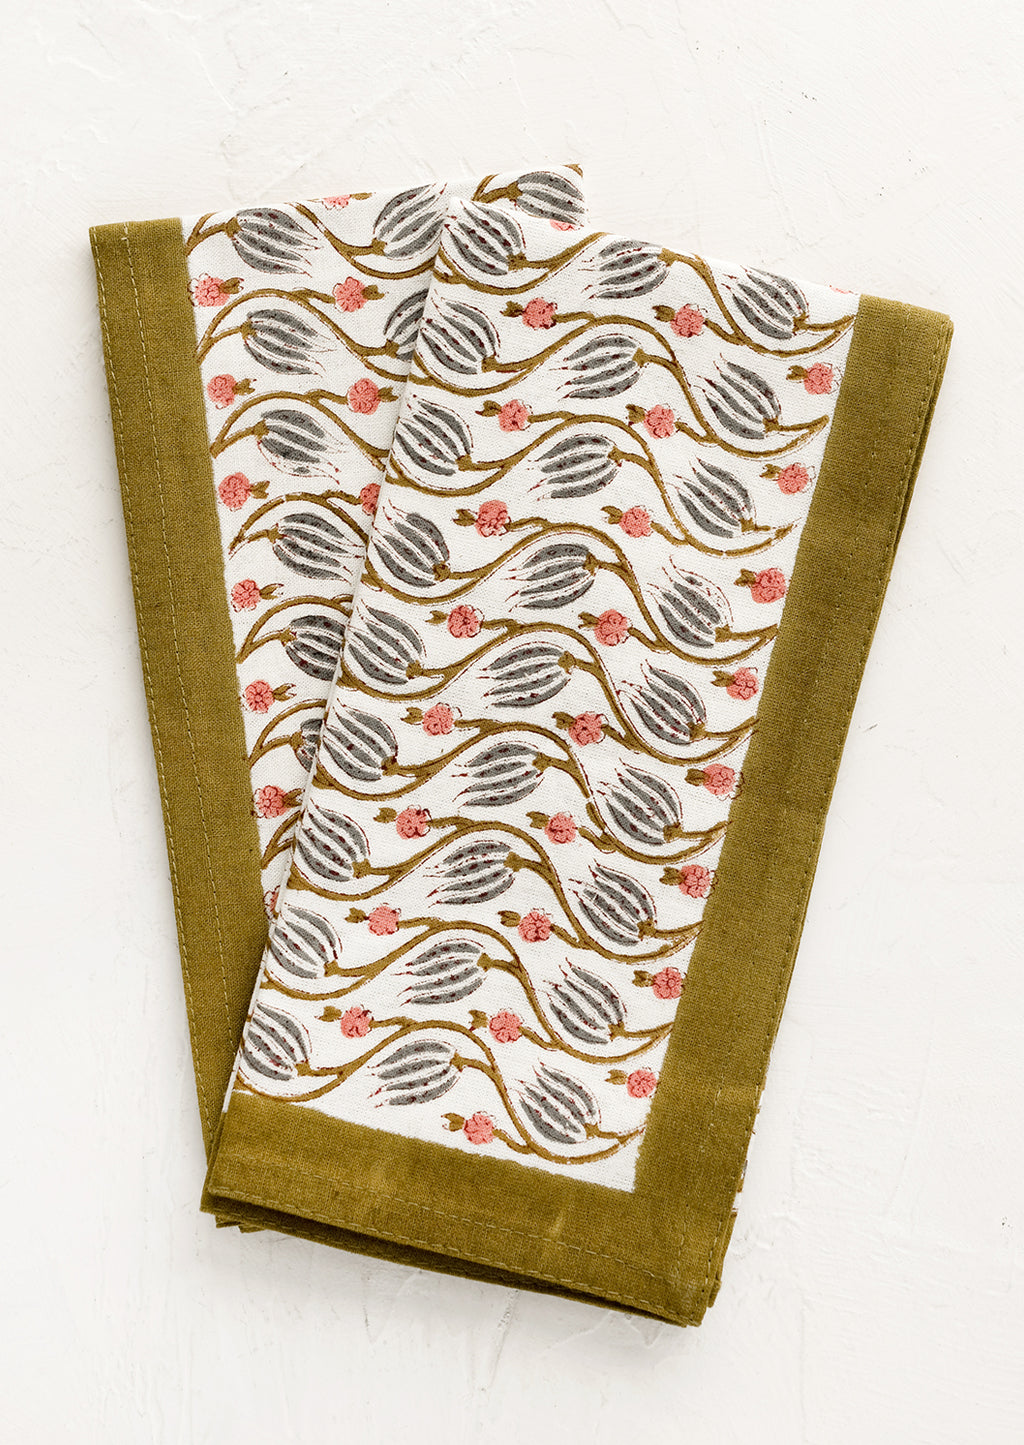 Khaki Multi: Floral print napkins with khaki green border.